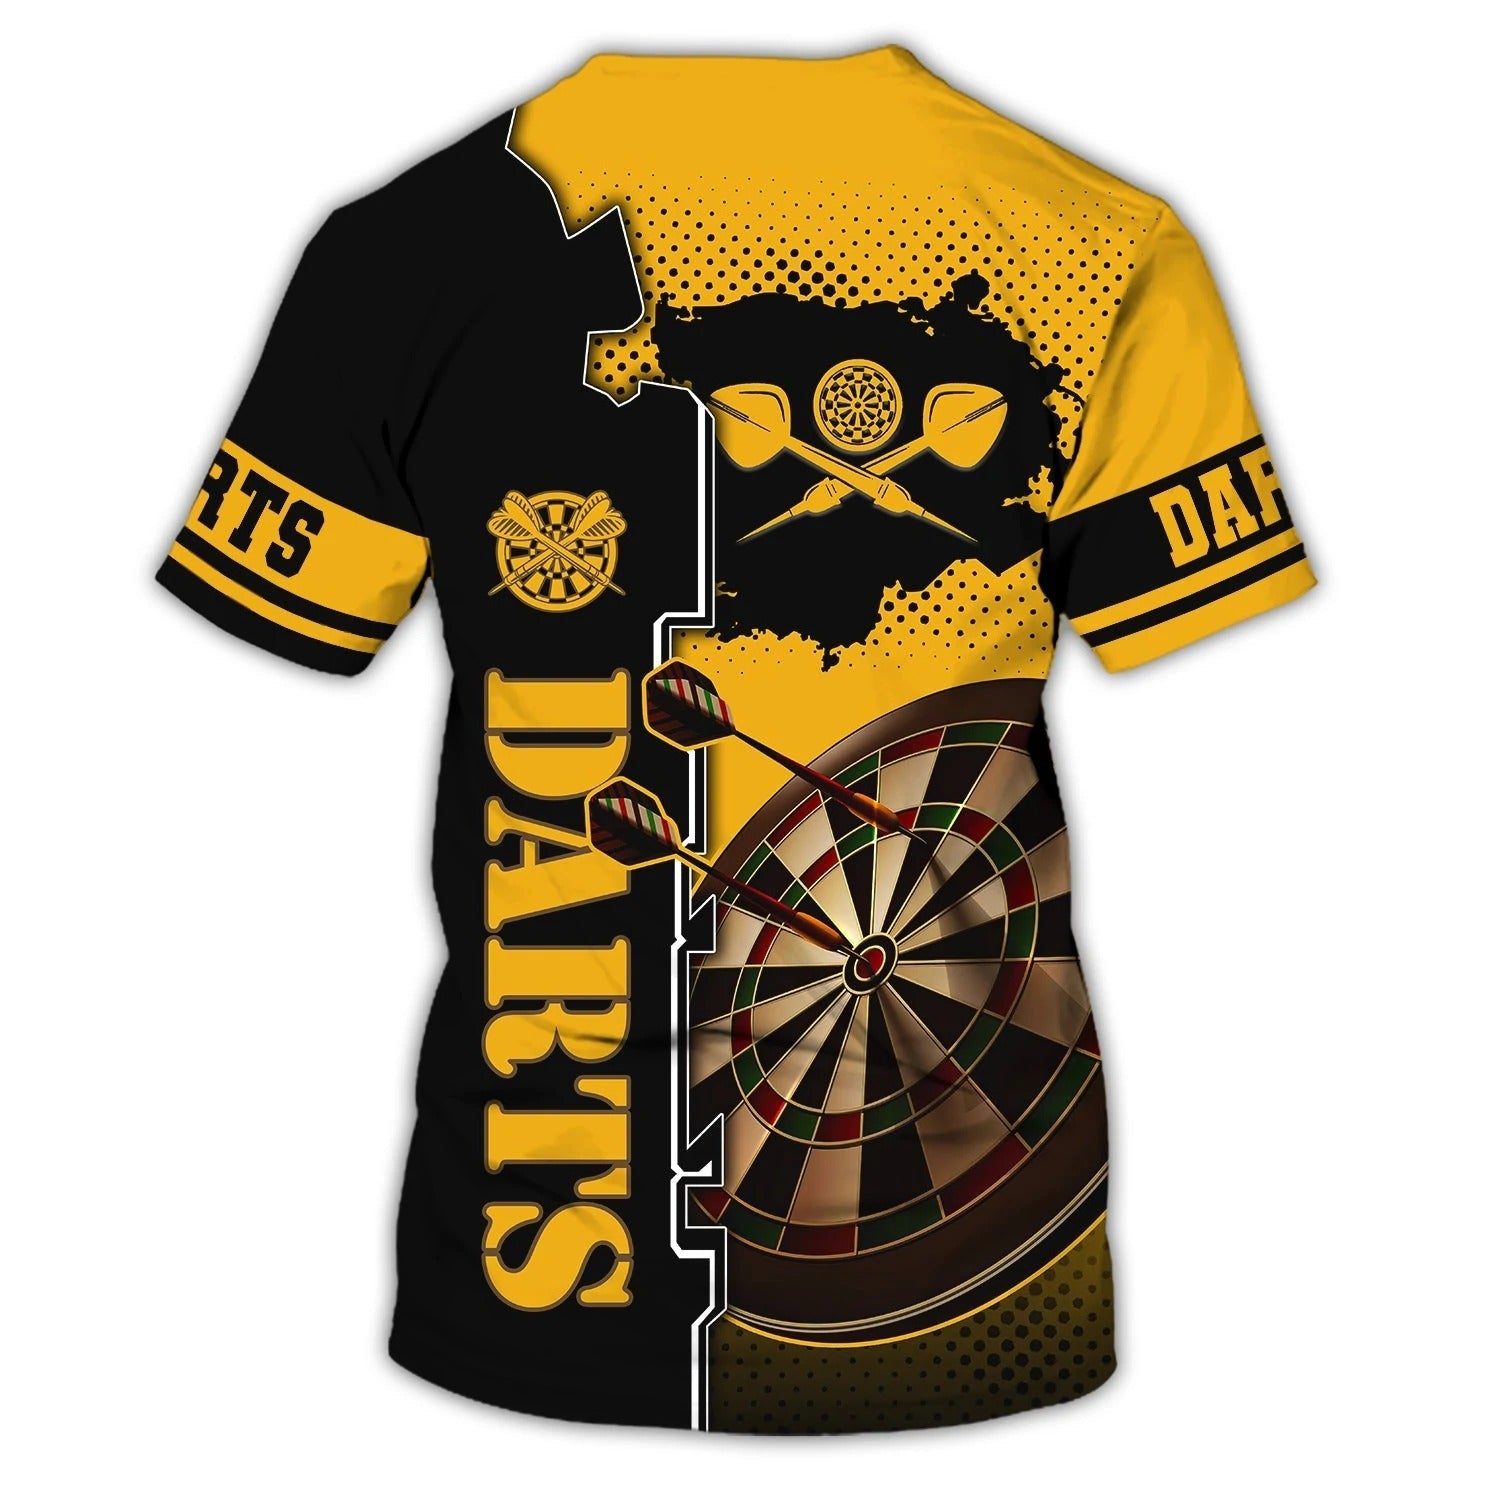 Customized 3D Dart Shirt For Men And Women/ Dart On Shirt/ Custom Dart Shirt/ Gift For Dart Player